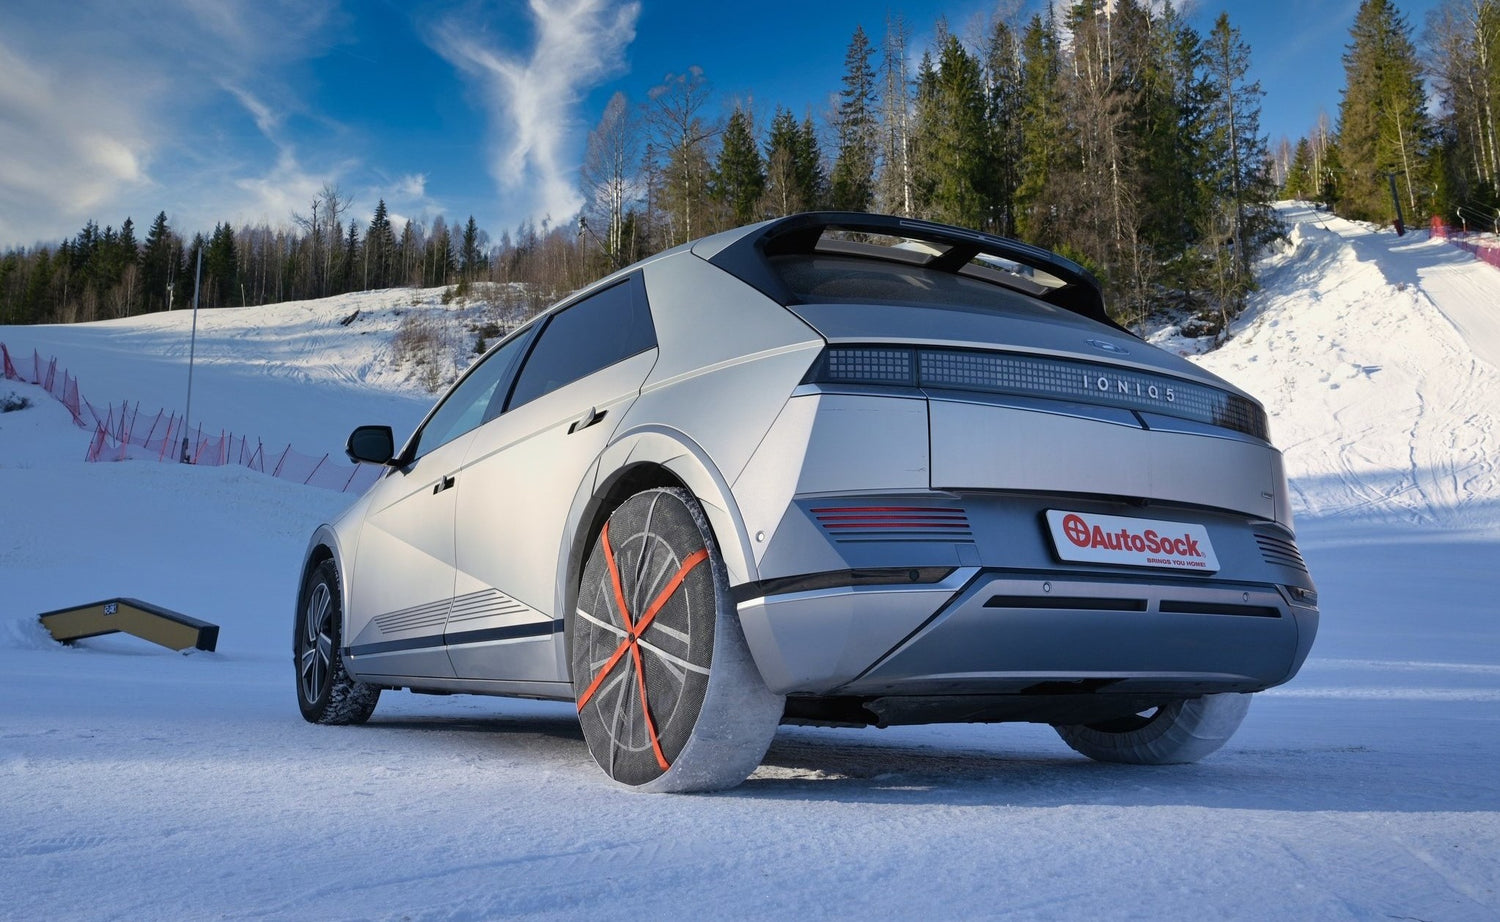 AutoSock monté sur les roues arrière d'une voiture, debout sur la neige en hiver